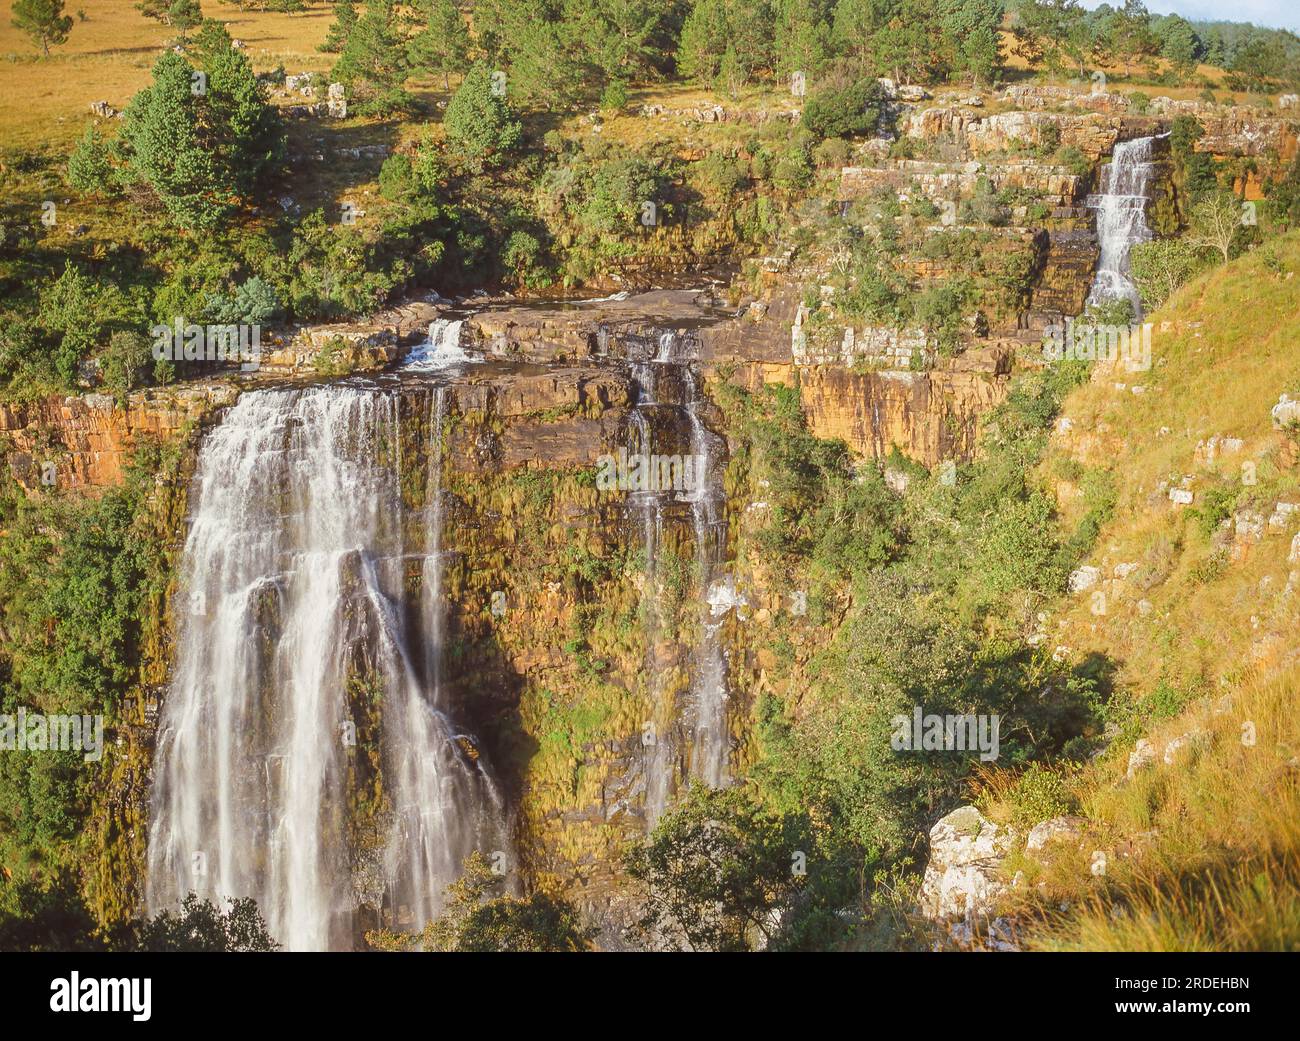 Die Lisbon Falls befinden sich im Lisbon Creek, einem Nebenfluss des Blyde River. Sie befinden sich in kurzer Entfernung nördlich von Graskop in Mpumalanga, Südafrika. Stockfoto